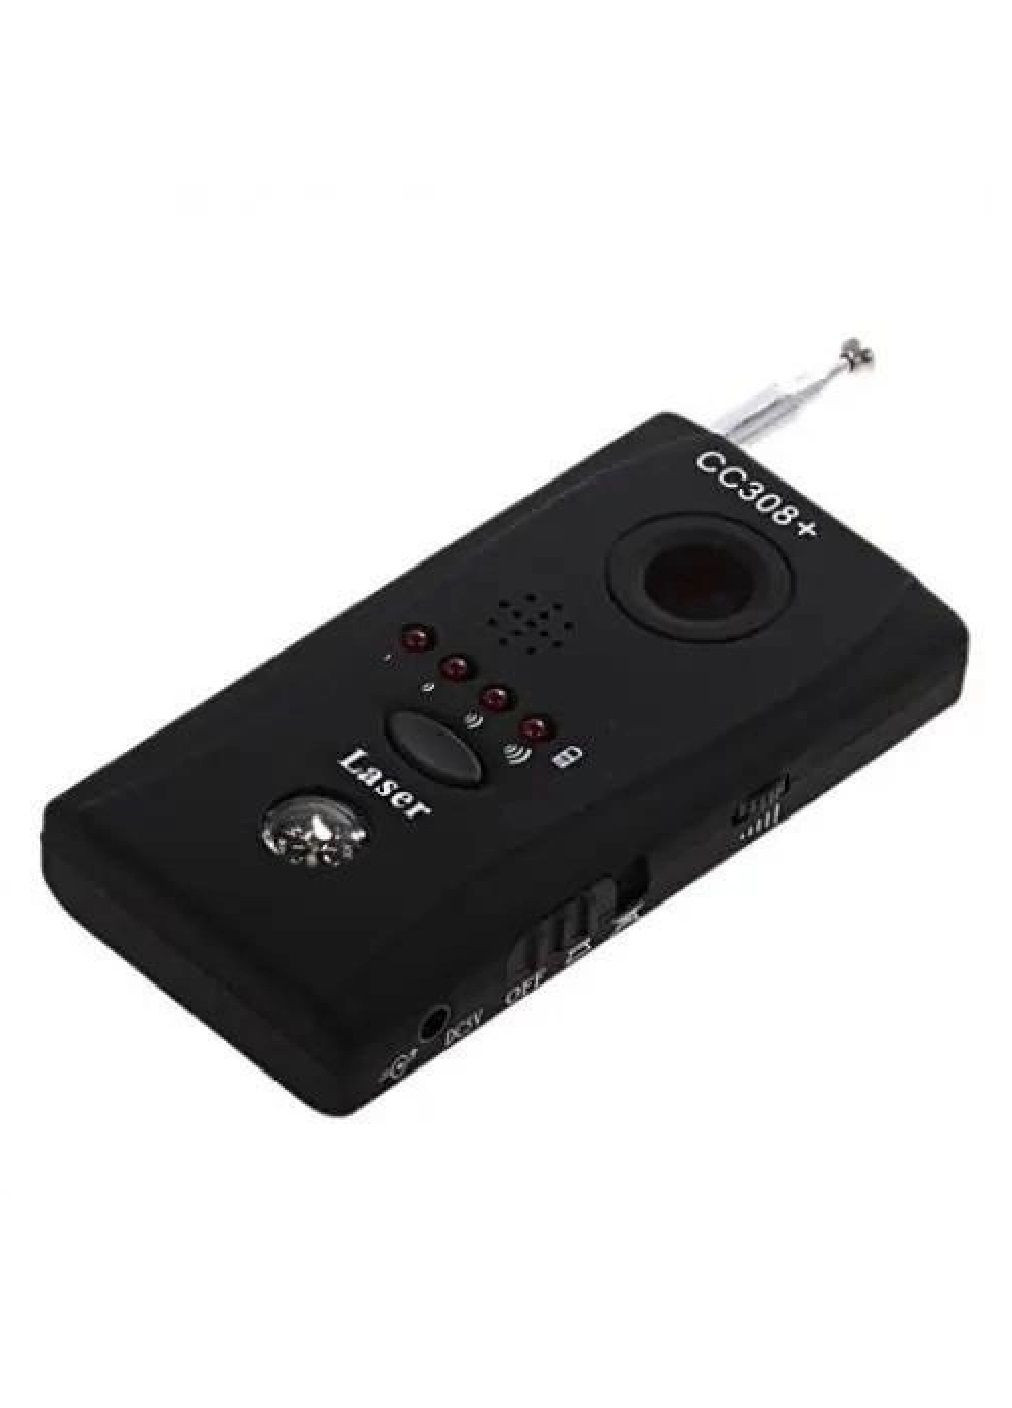 Детектор сканер аккумуляторный для обнаружения скрытых видеокамер жучков 90х50х14 мм (476614-Prob) Черный Unbranded (285738613)